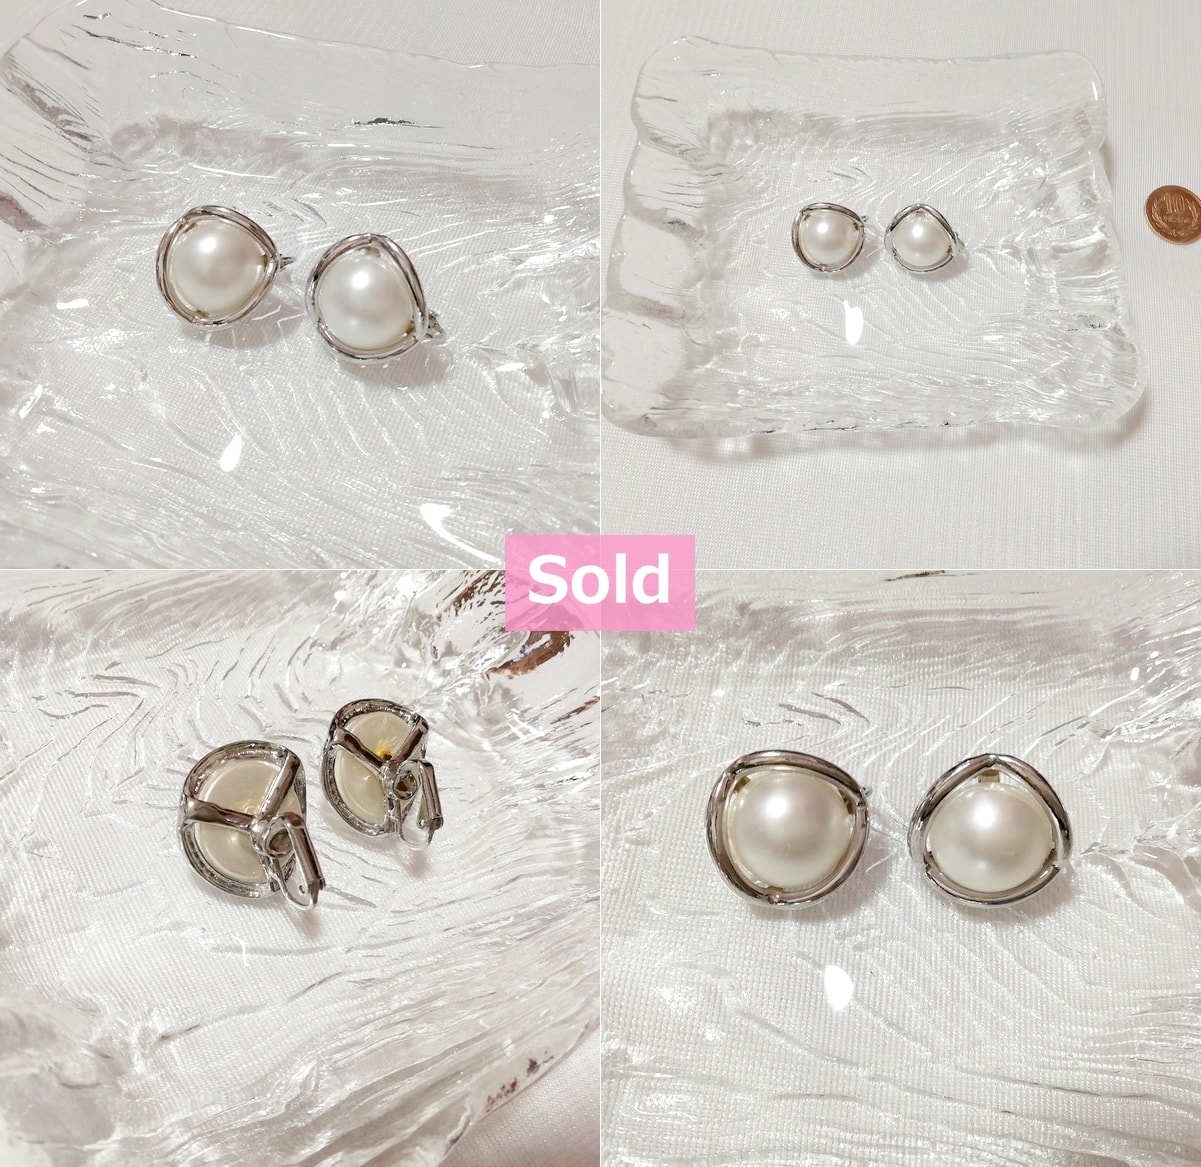 Weiße Perle Silber Rahmen Ohrringe Schmuck Zubehör Weiße Perle Silber Rahmen Ohrringe Schmuck Zubehör